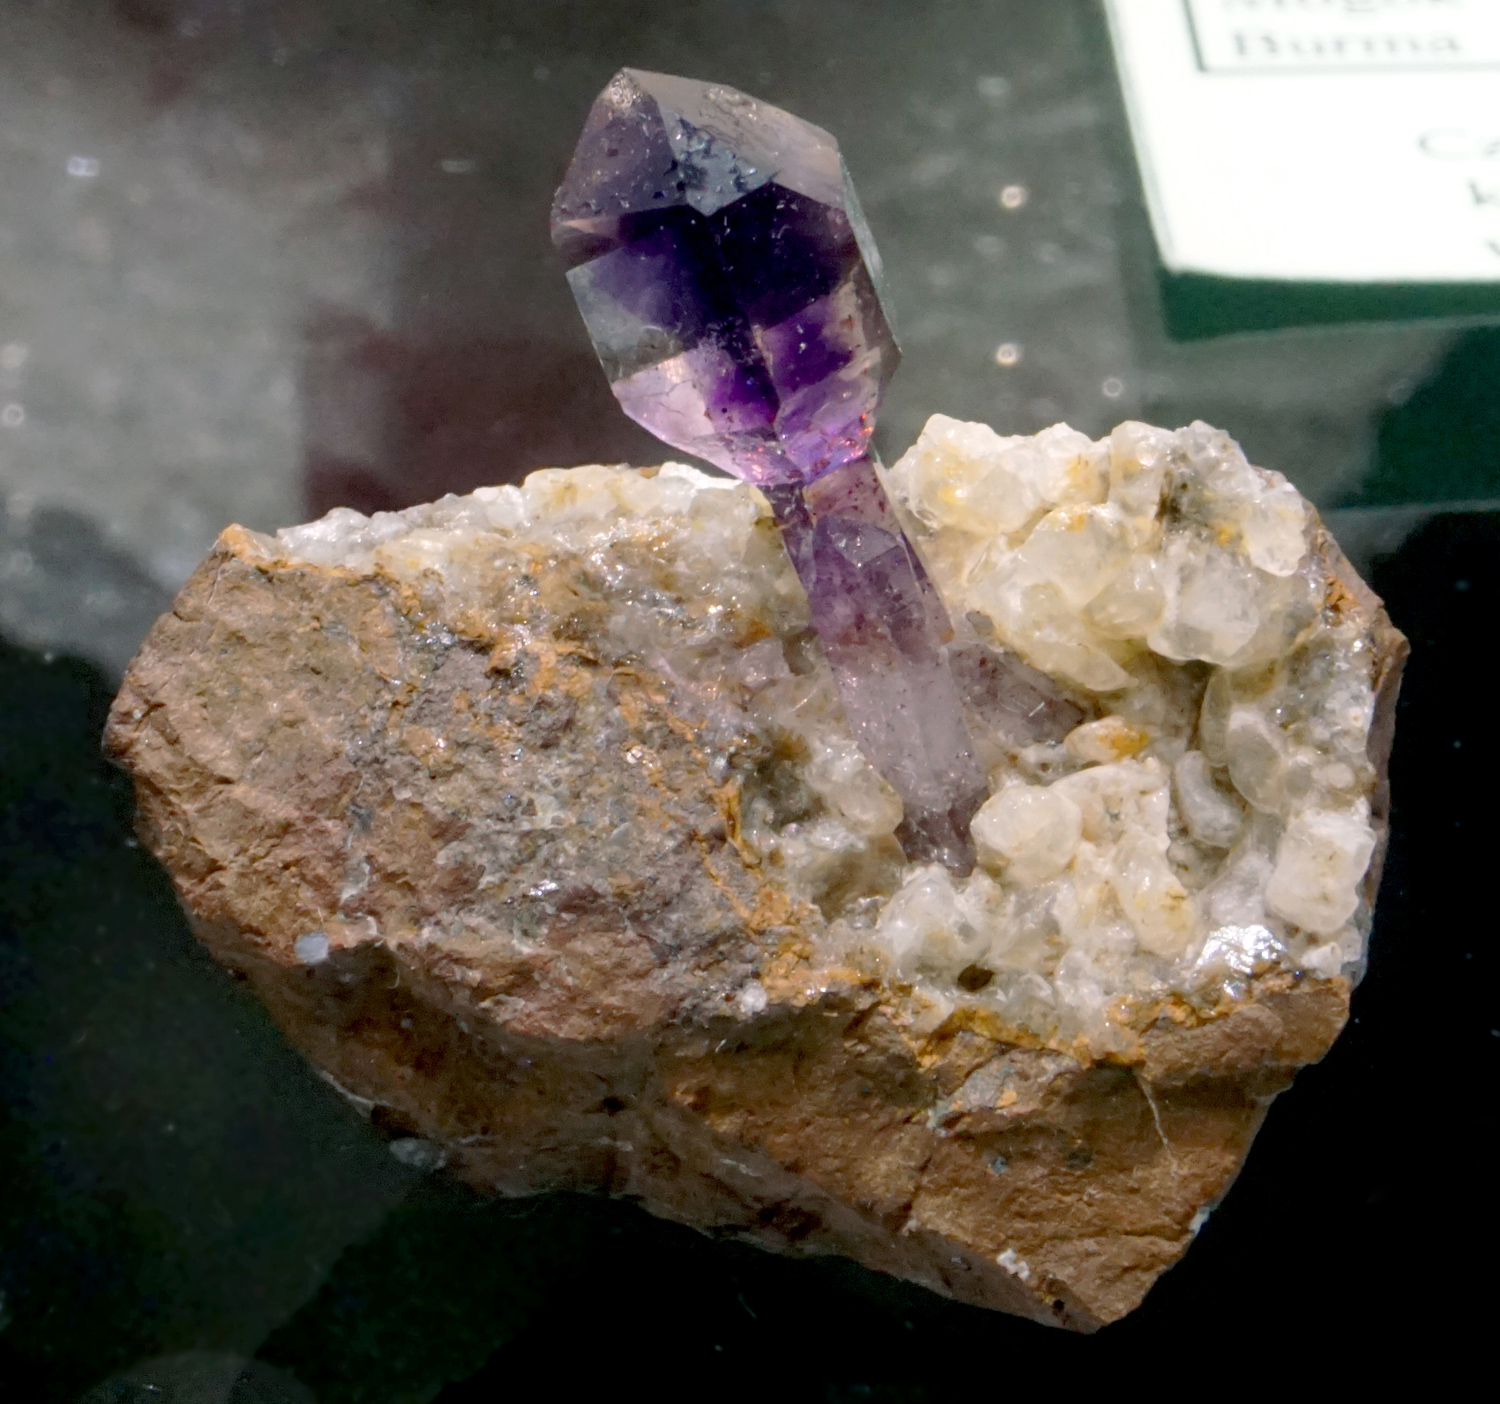 Amethyst Scepter Crystal